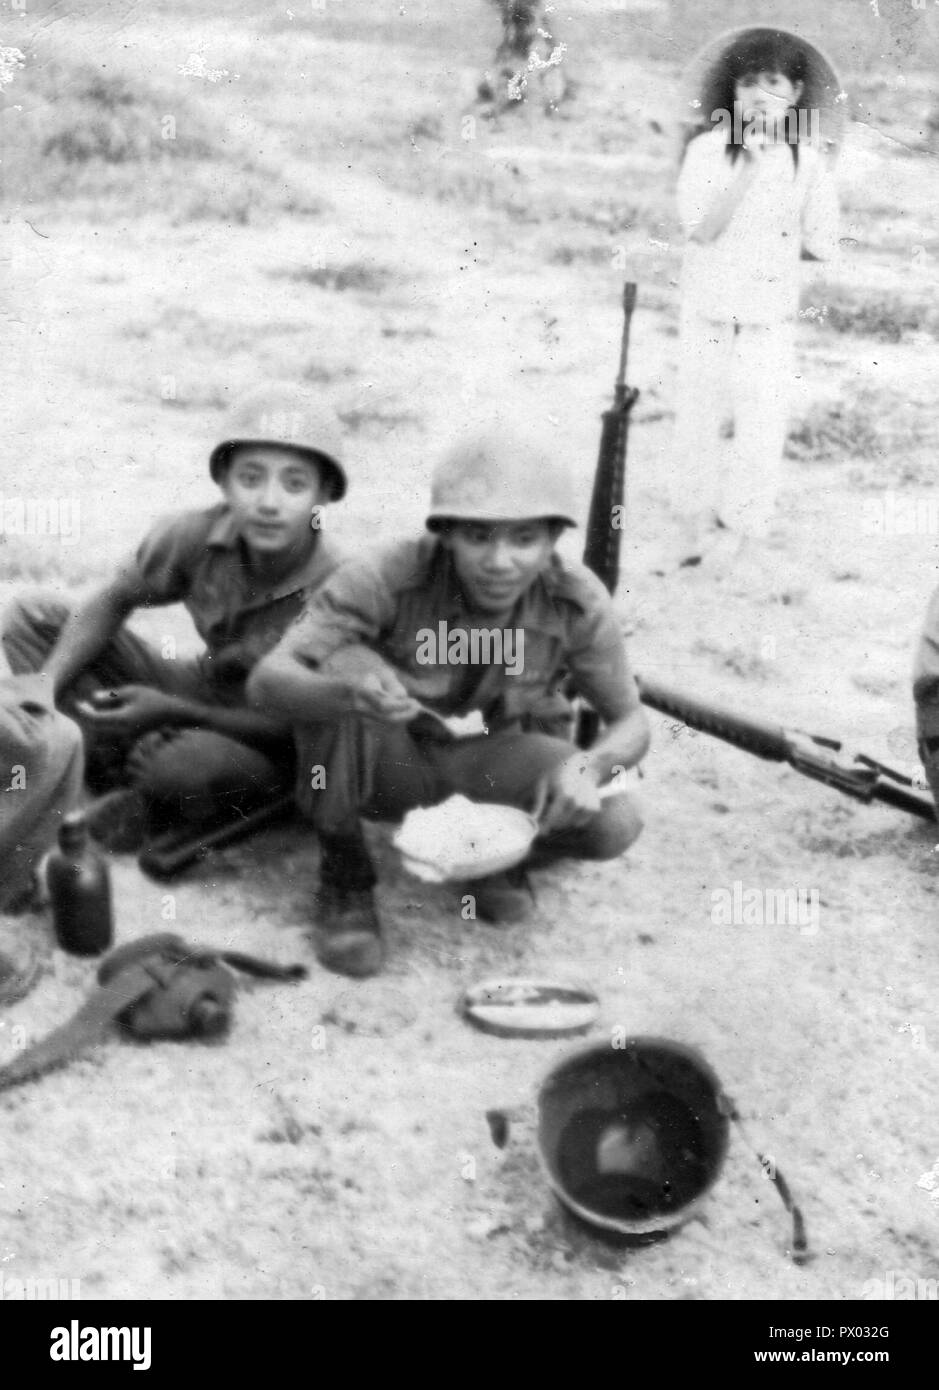 Vietnam war RVN Republic of Vietnam soldiers Stock Photo